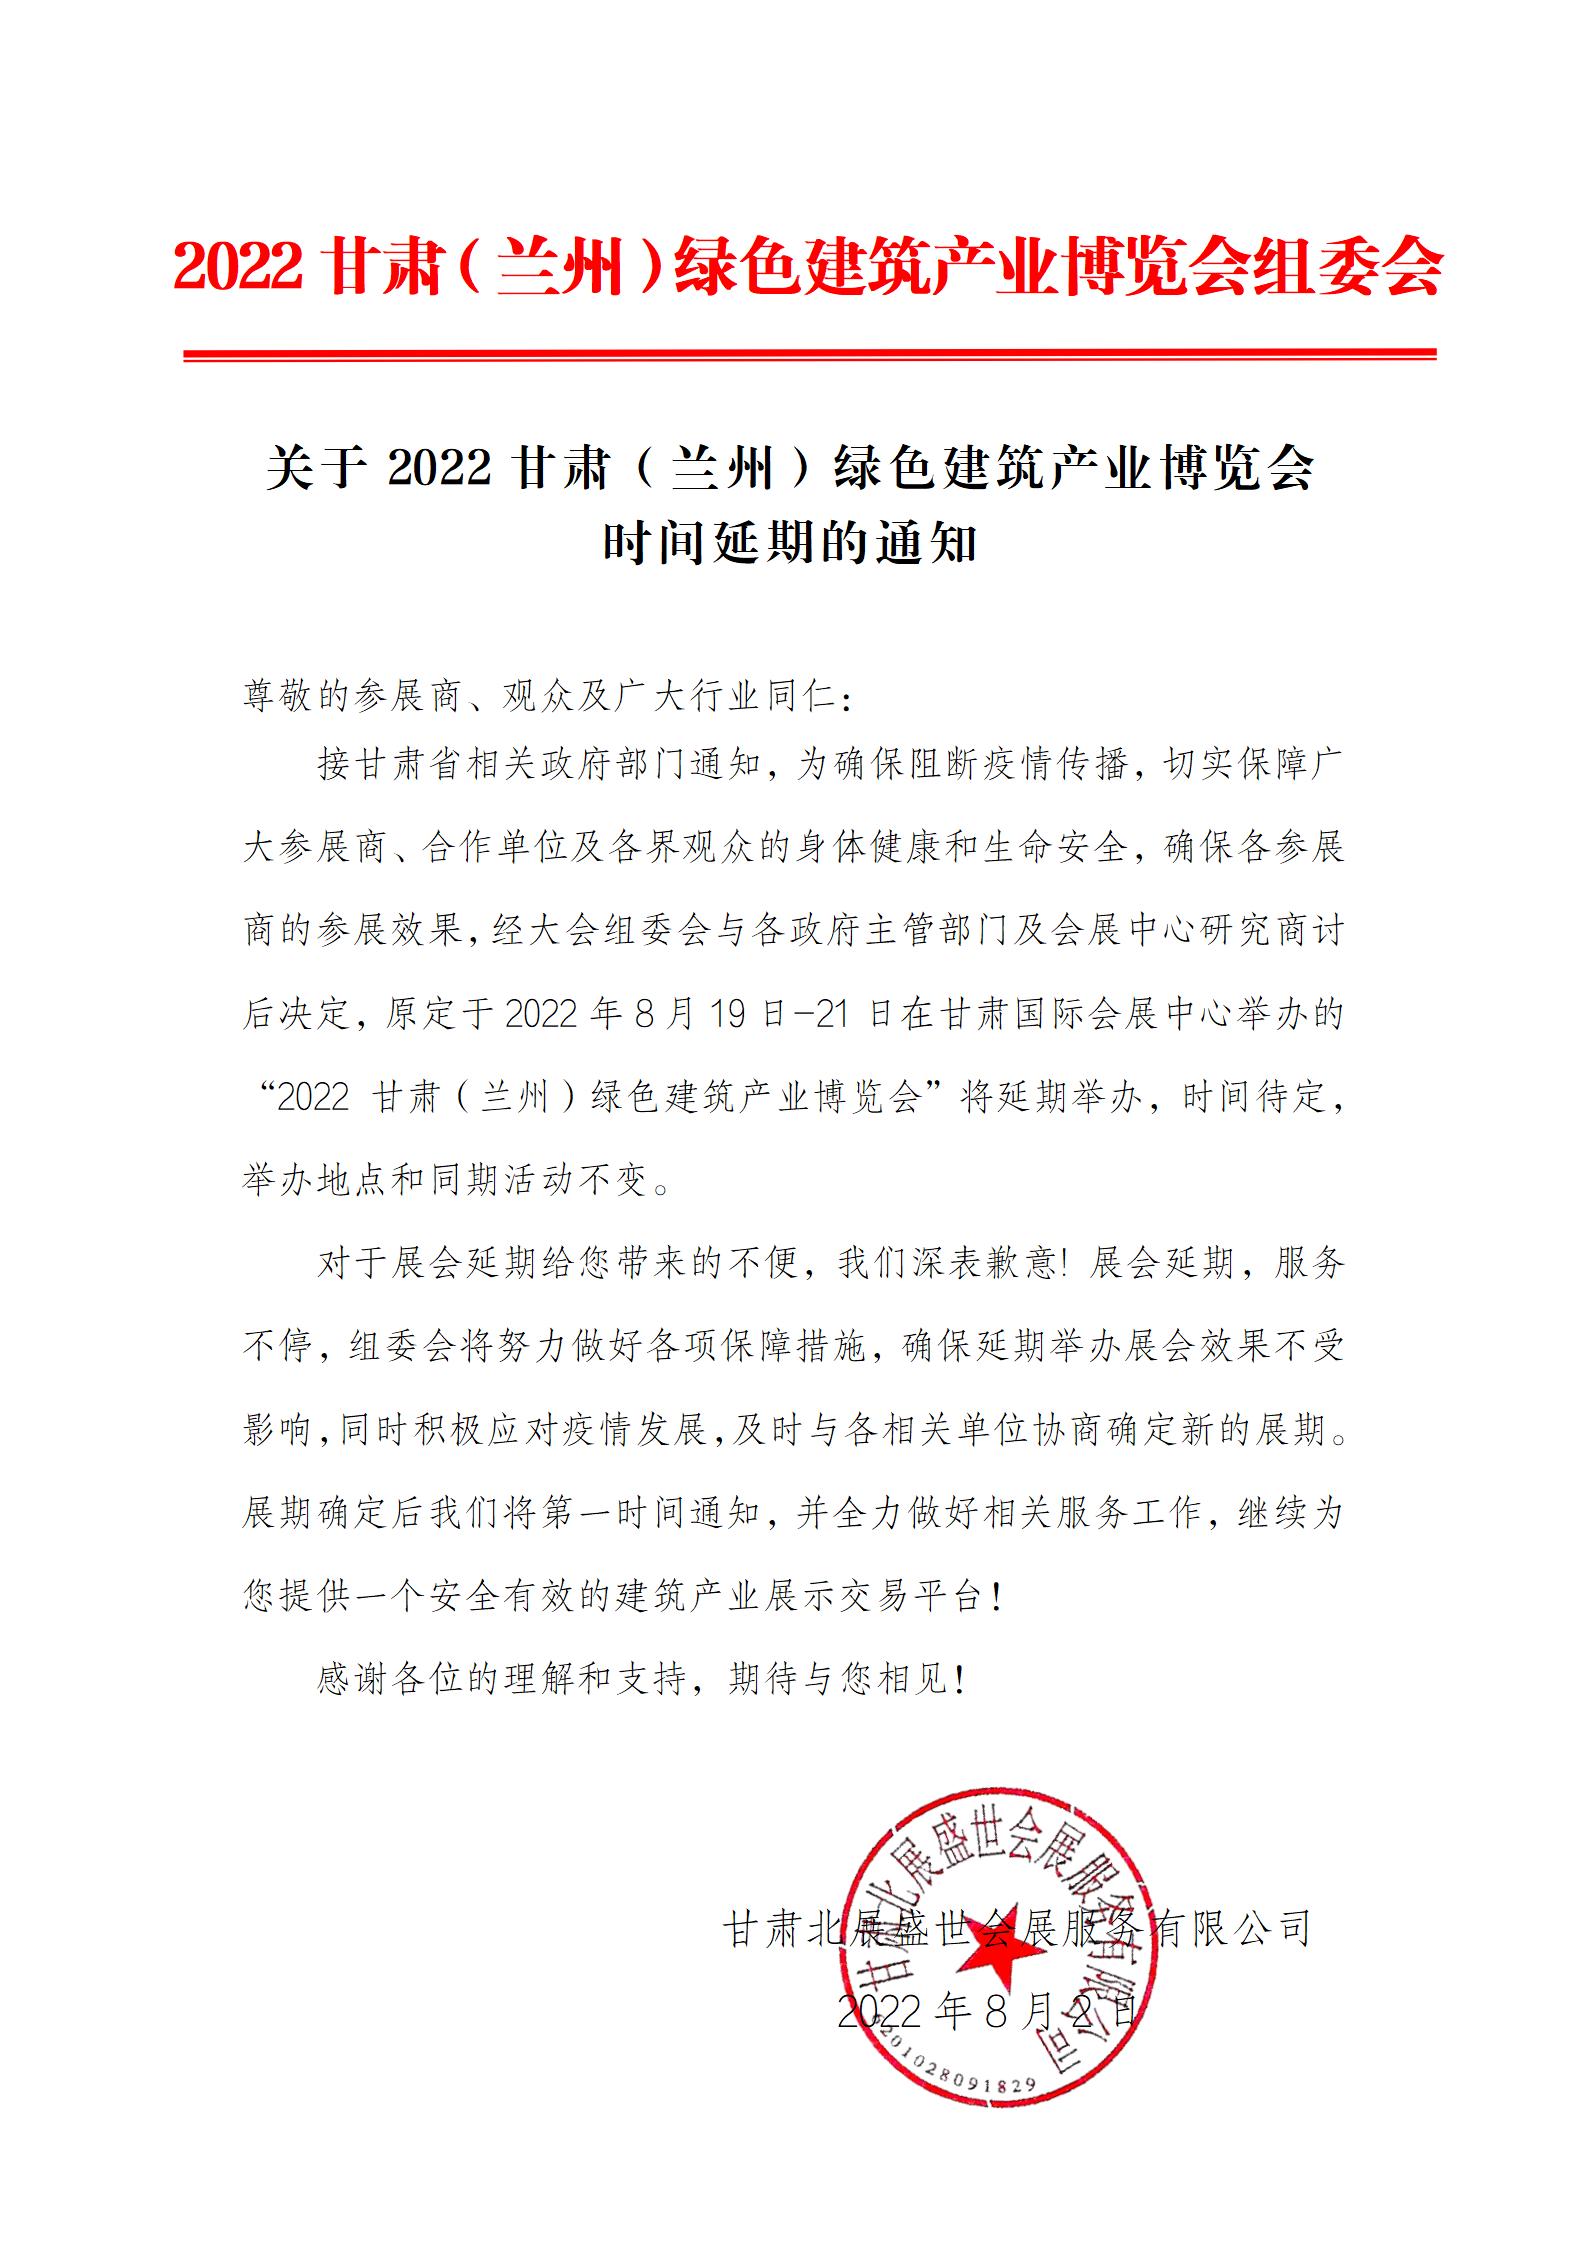 关于2022甘肃（兰州）绿色建筑产业博览会 时间延期的通知